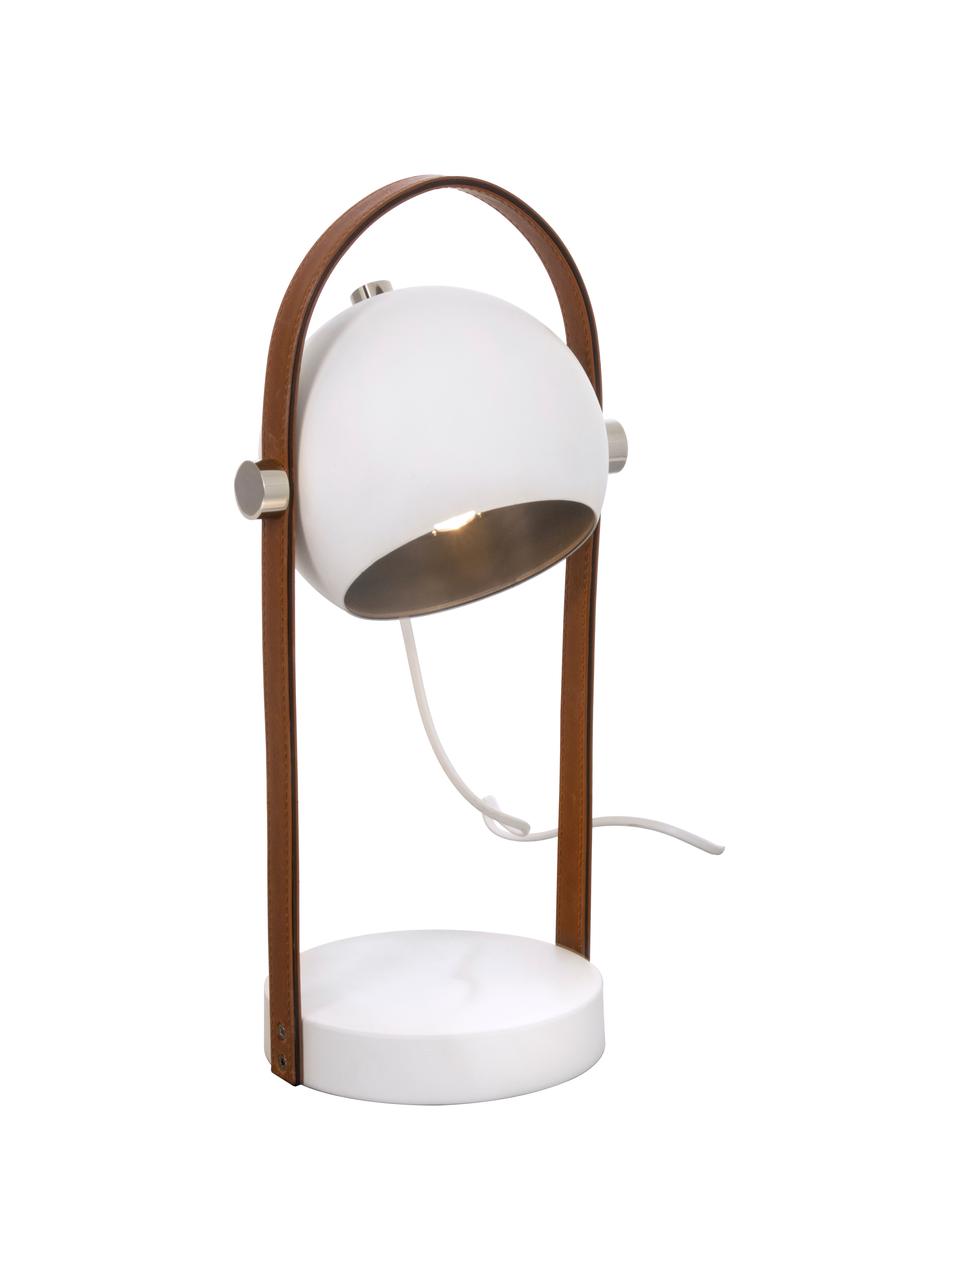 Tafellamp Bow met leren decoratie, Lampenkap: gecoat metaal, Lampvoet: gecoat metaal, Bruin, wit, B 15 x H 38 cm